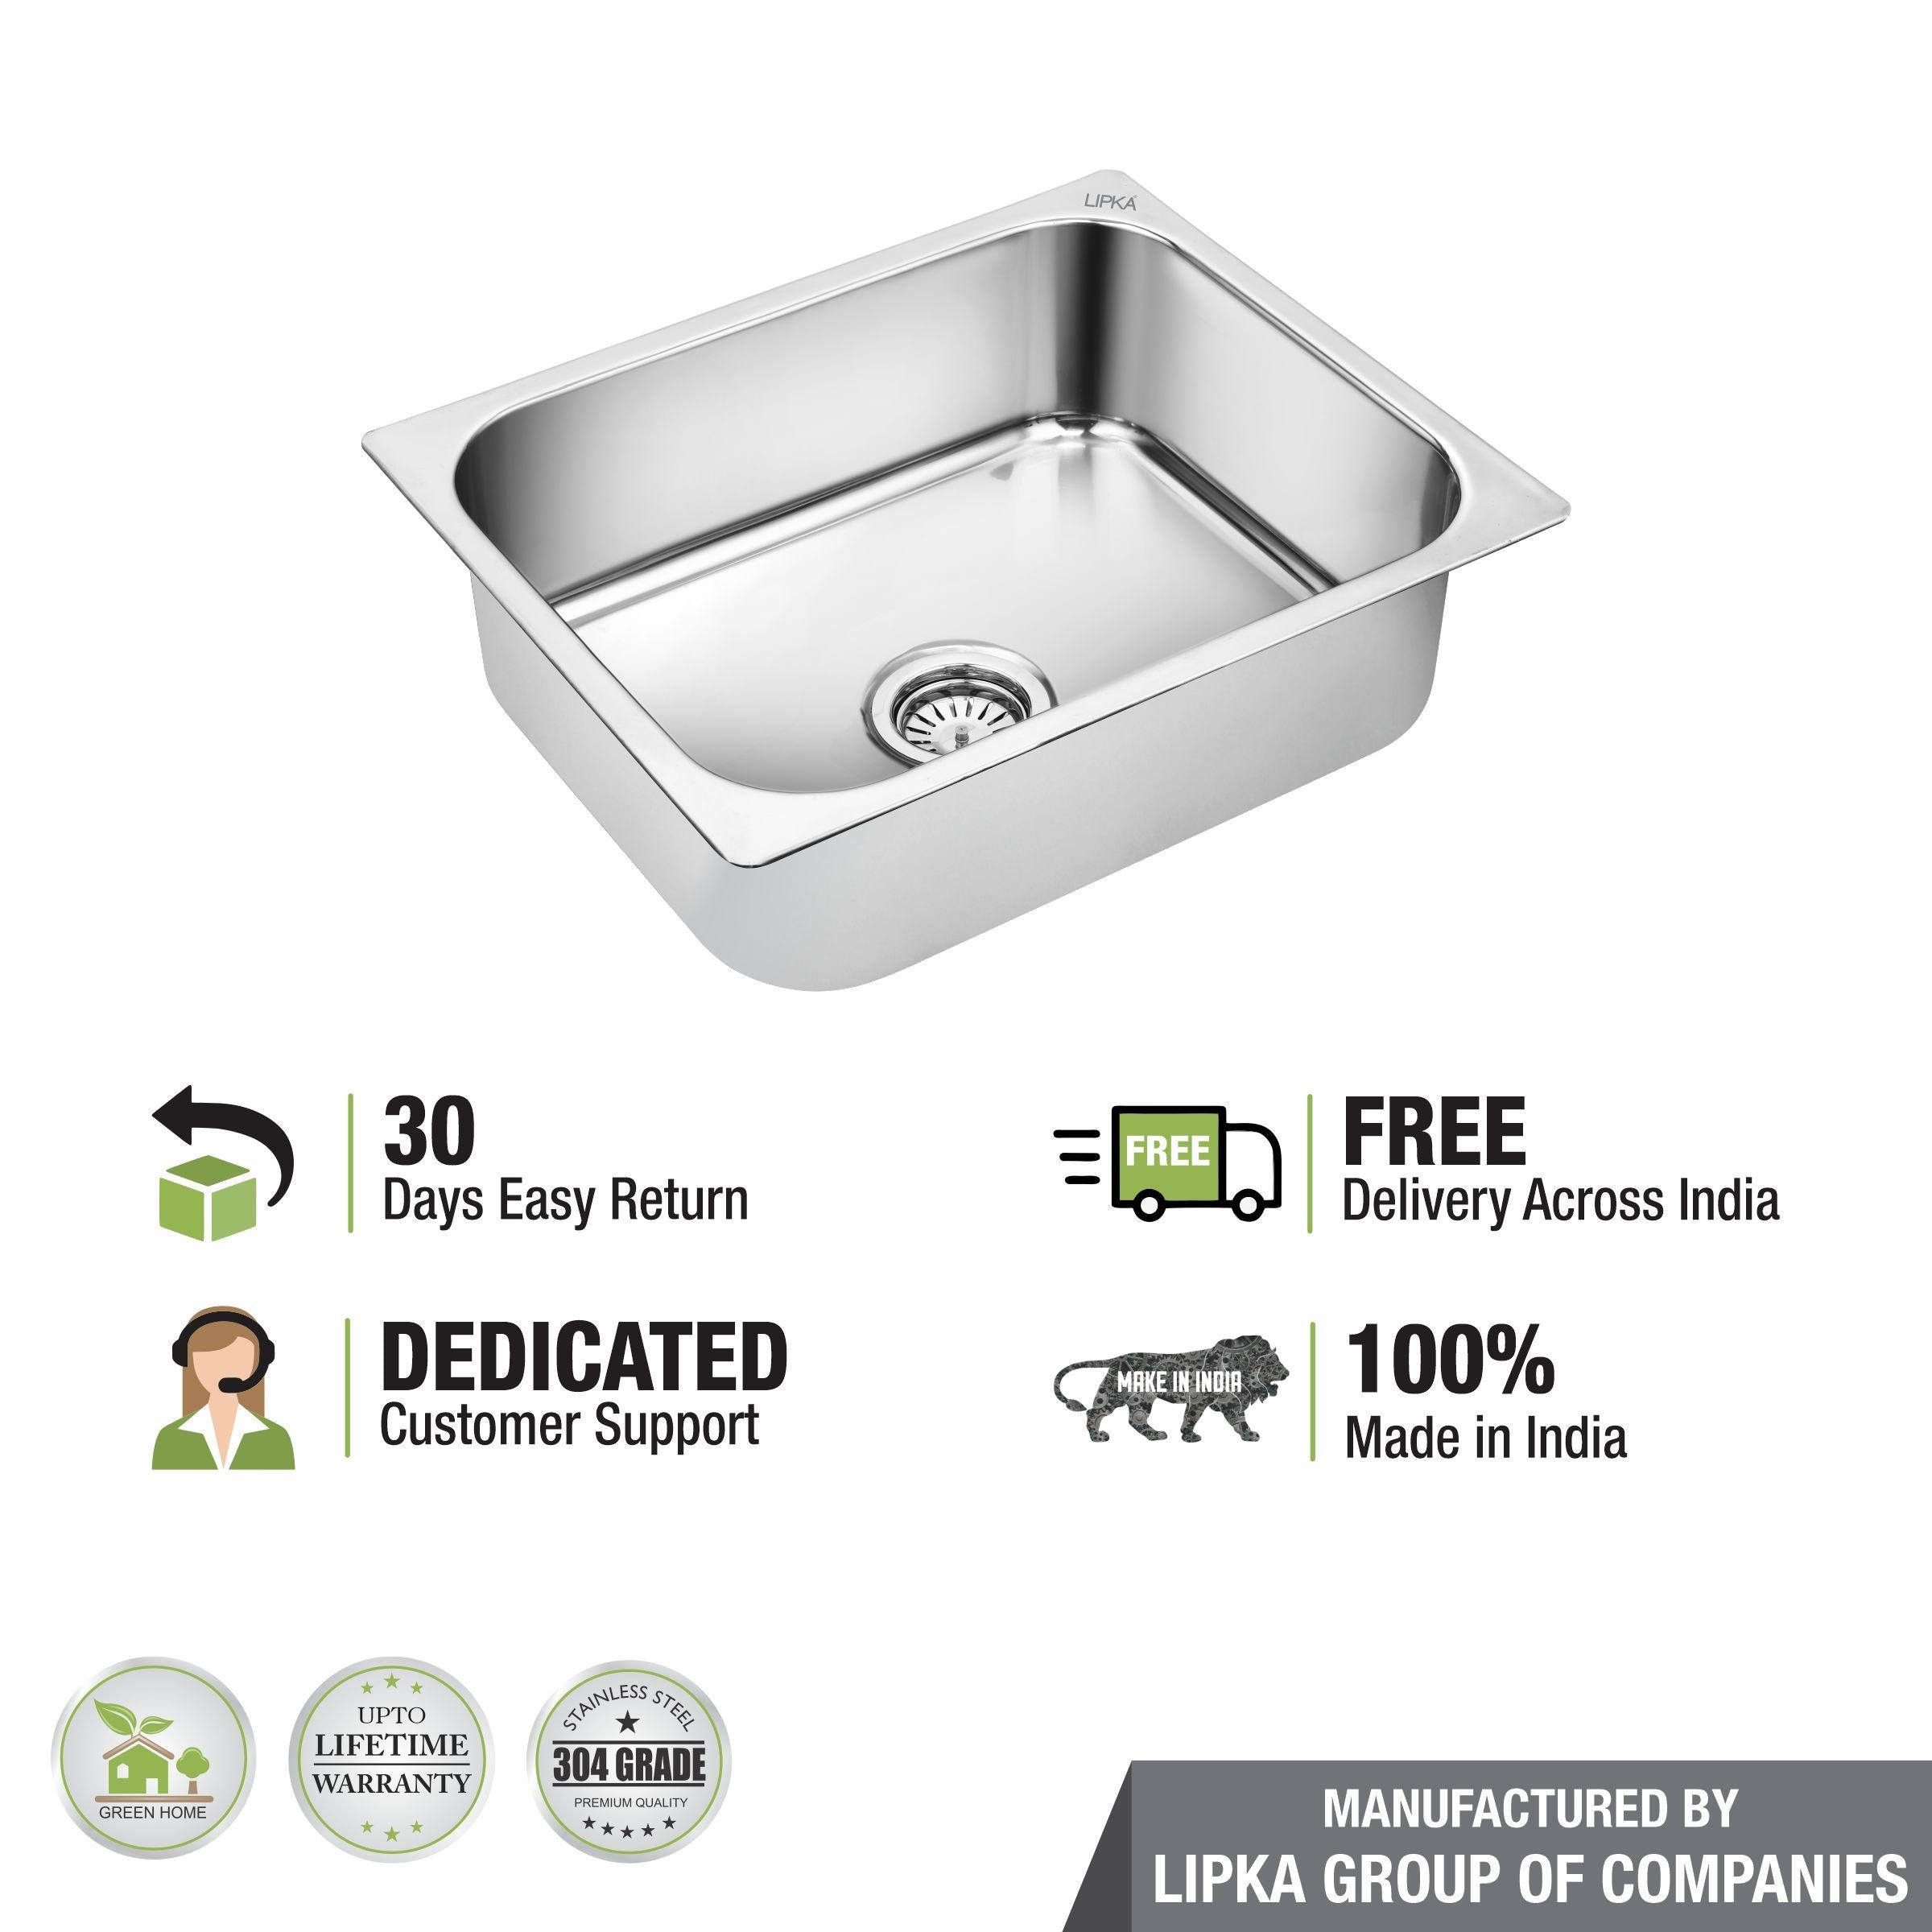 Square Single Bowl 304-Grade Kitchen Sink (24 x 18 x 9 Inches) - LIPKA - Lipka Home